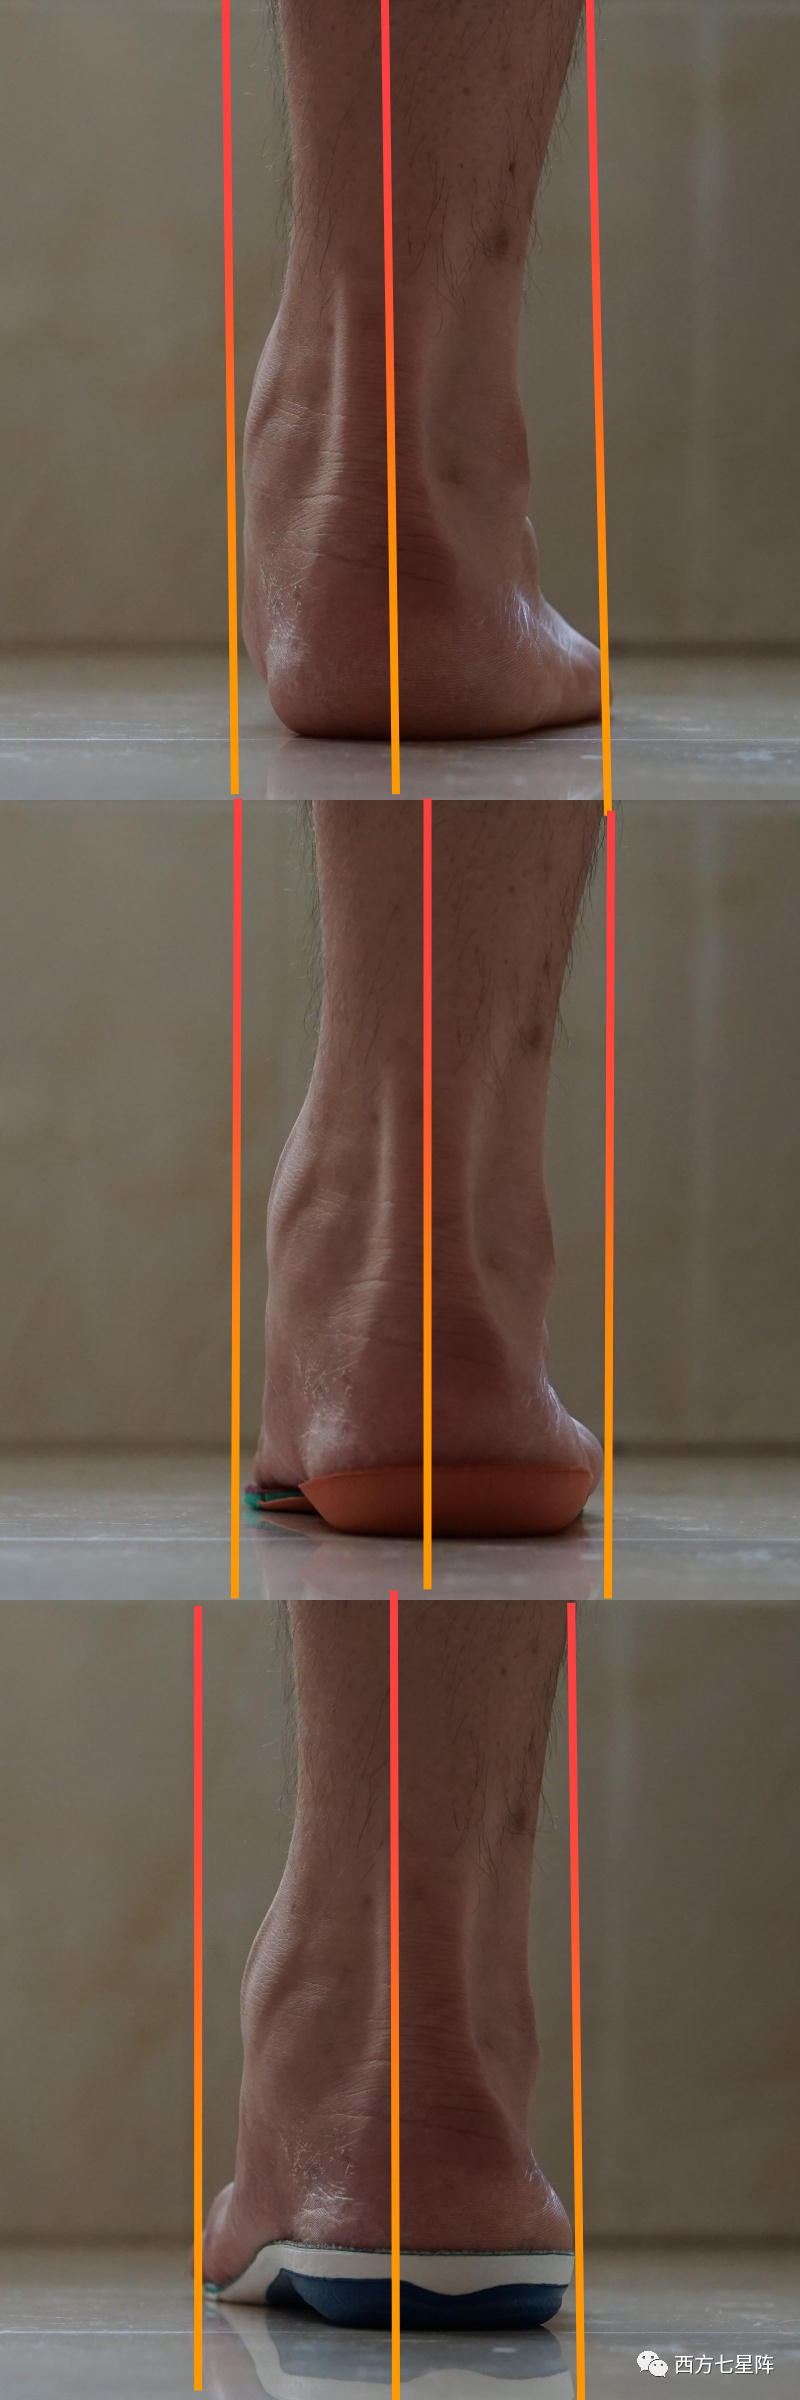 低足弓的烦恼,它来解决:sidasrunning足弓支撑鞋垫上脚体验